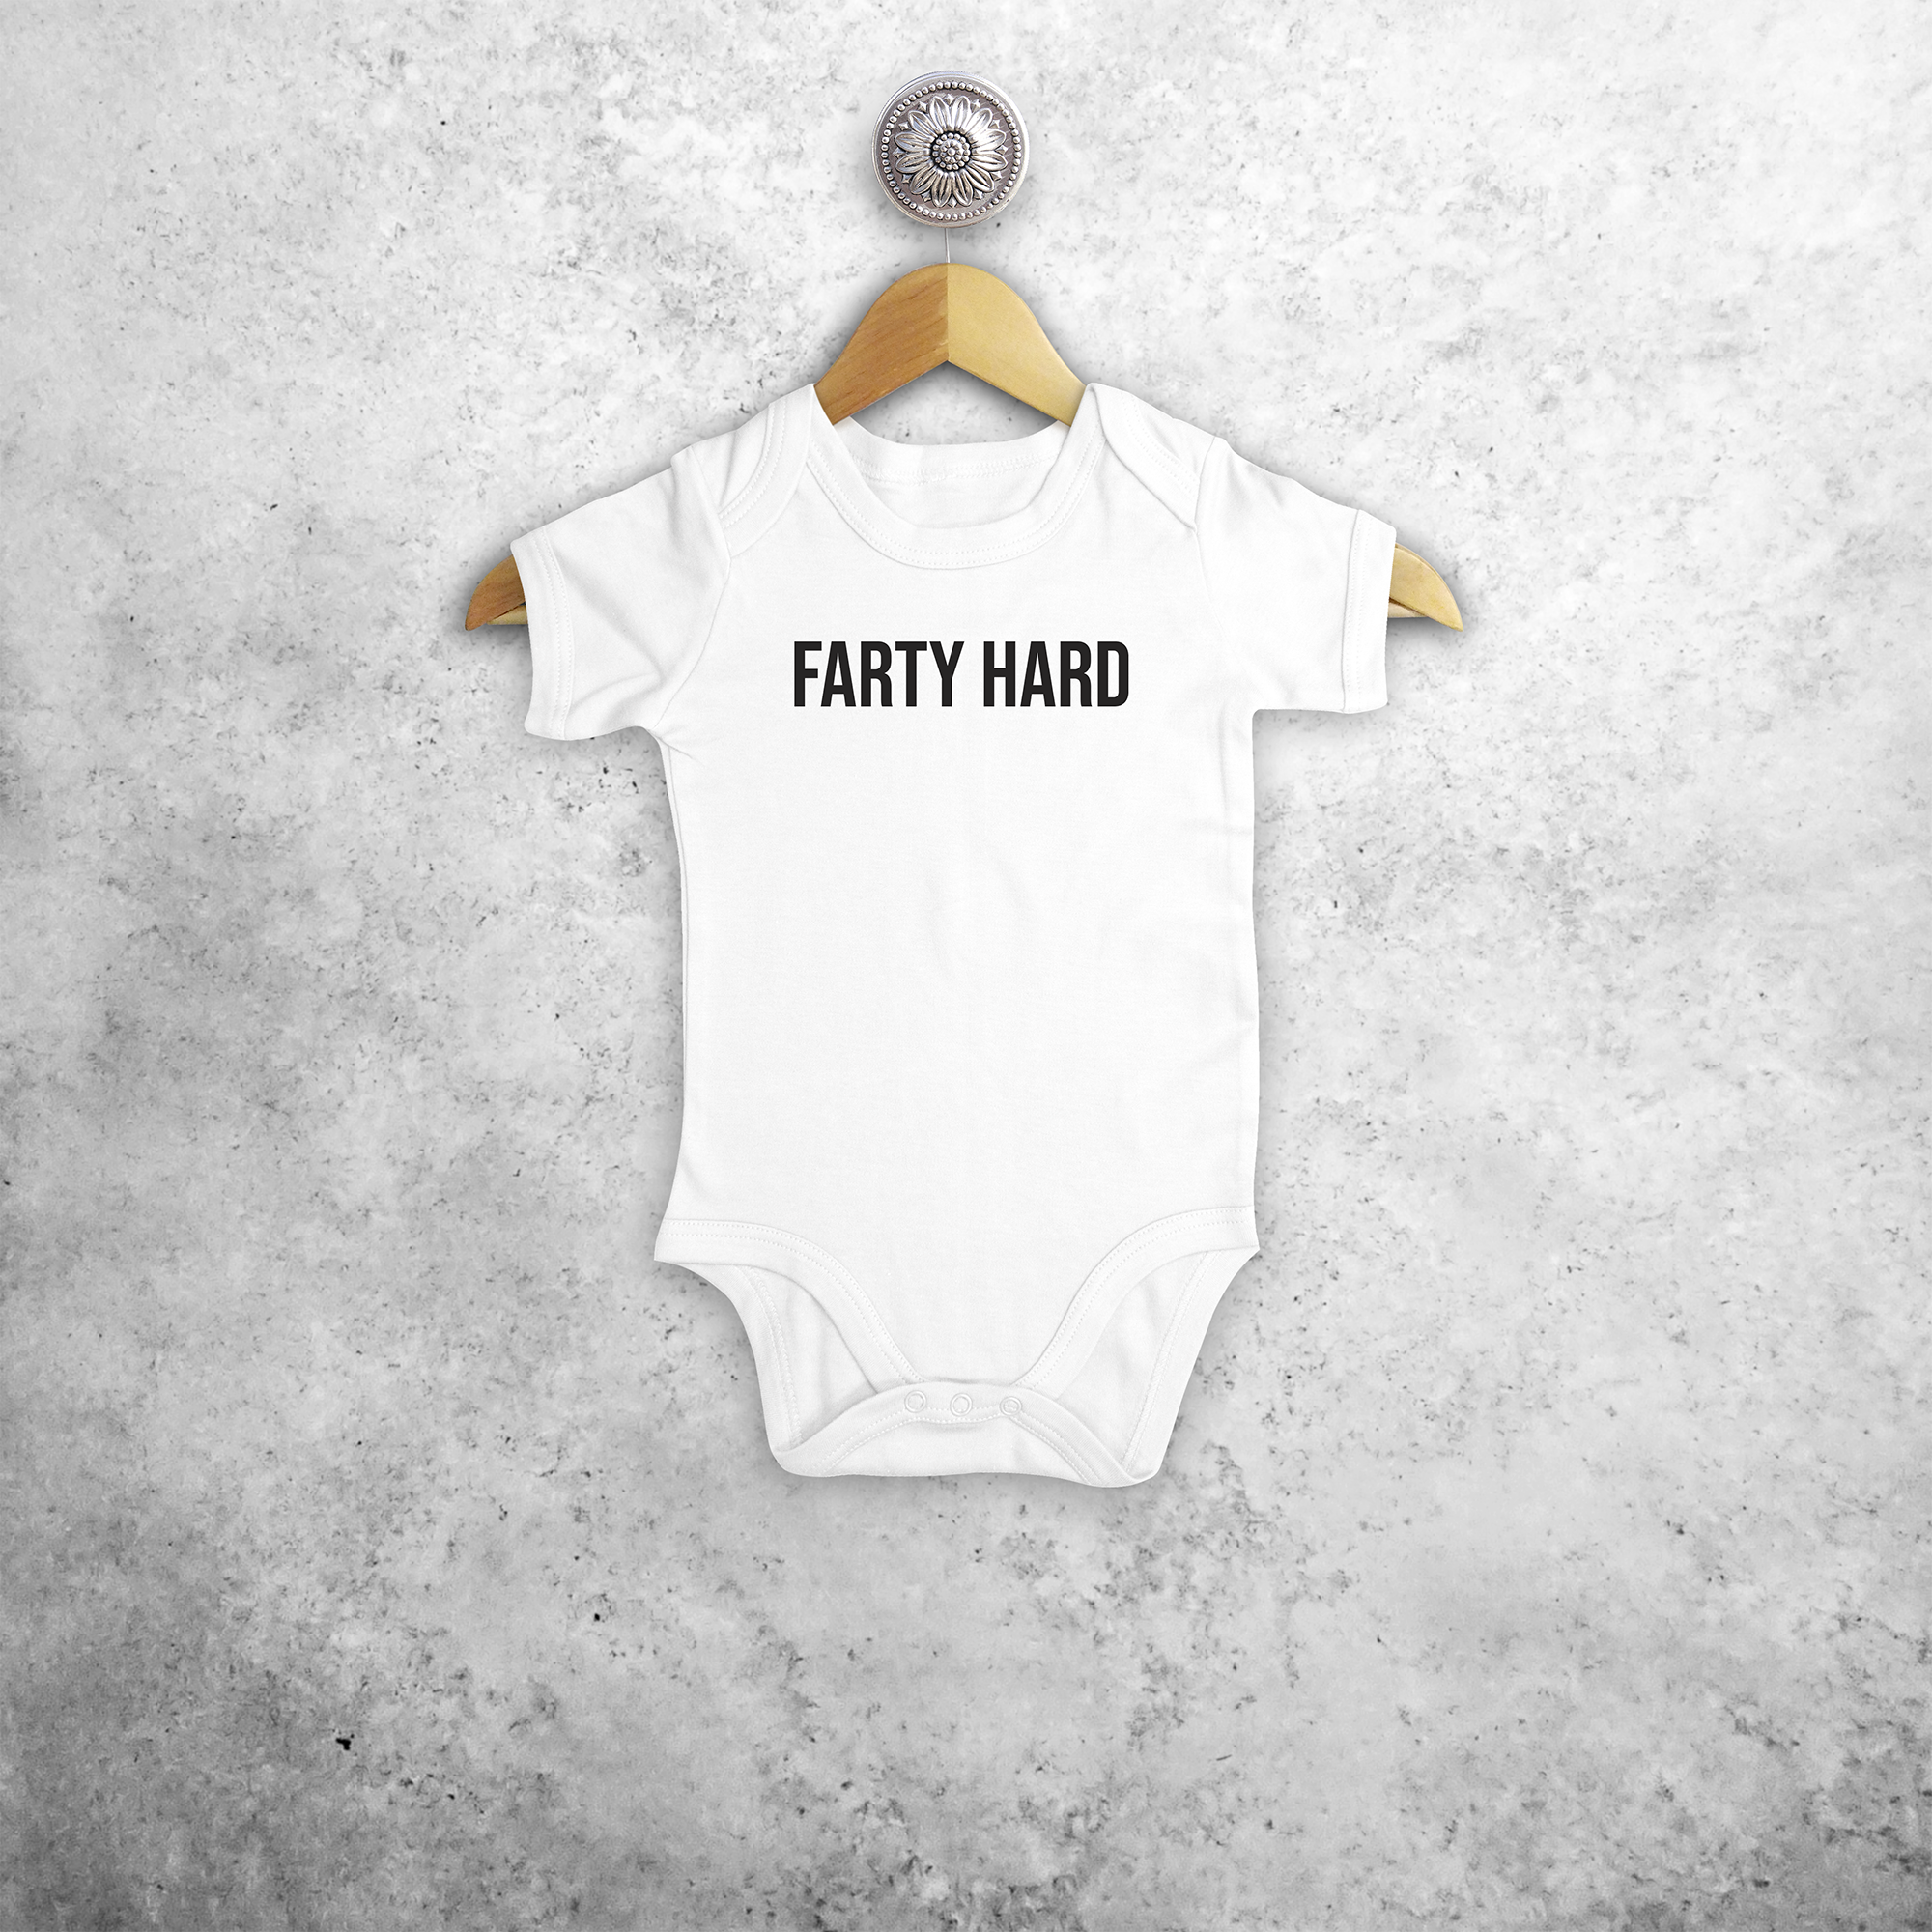 'Farty hard' baby shortsleeve bodysuit